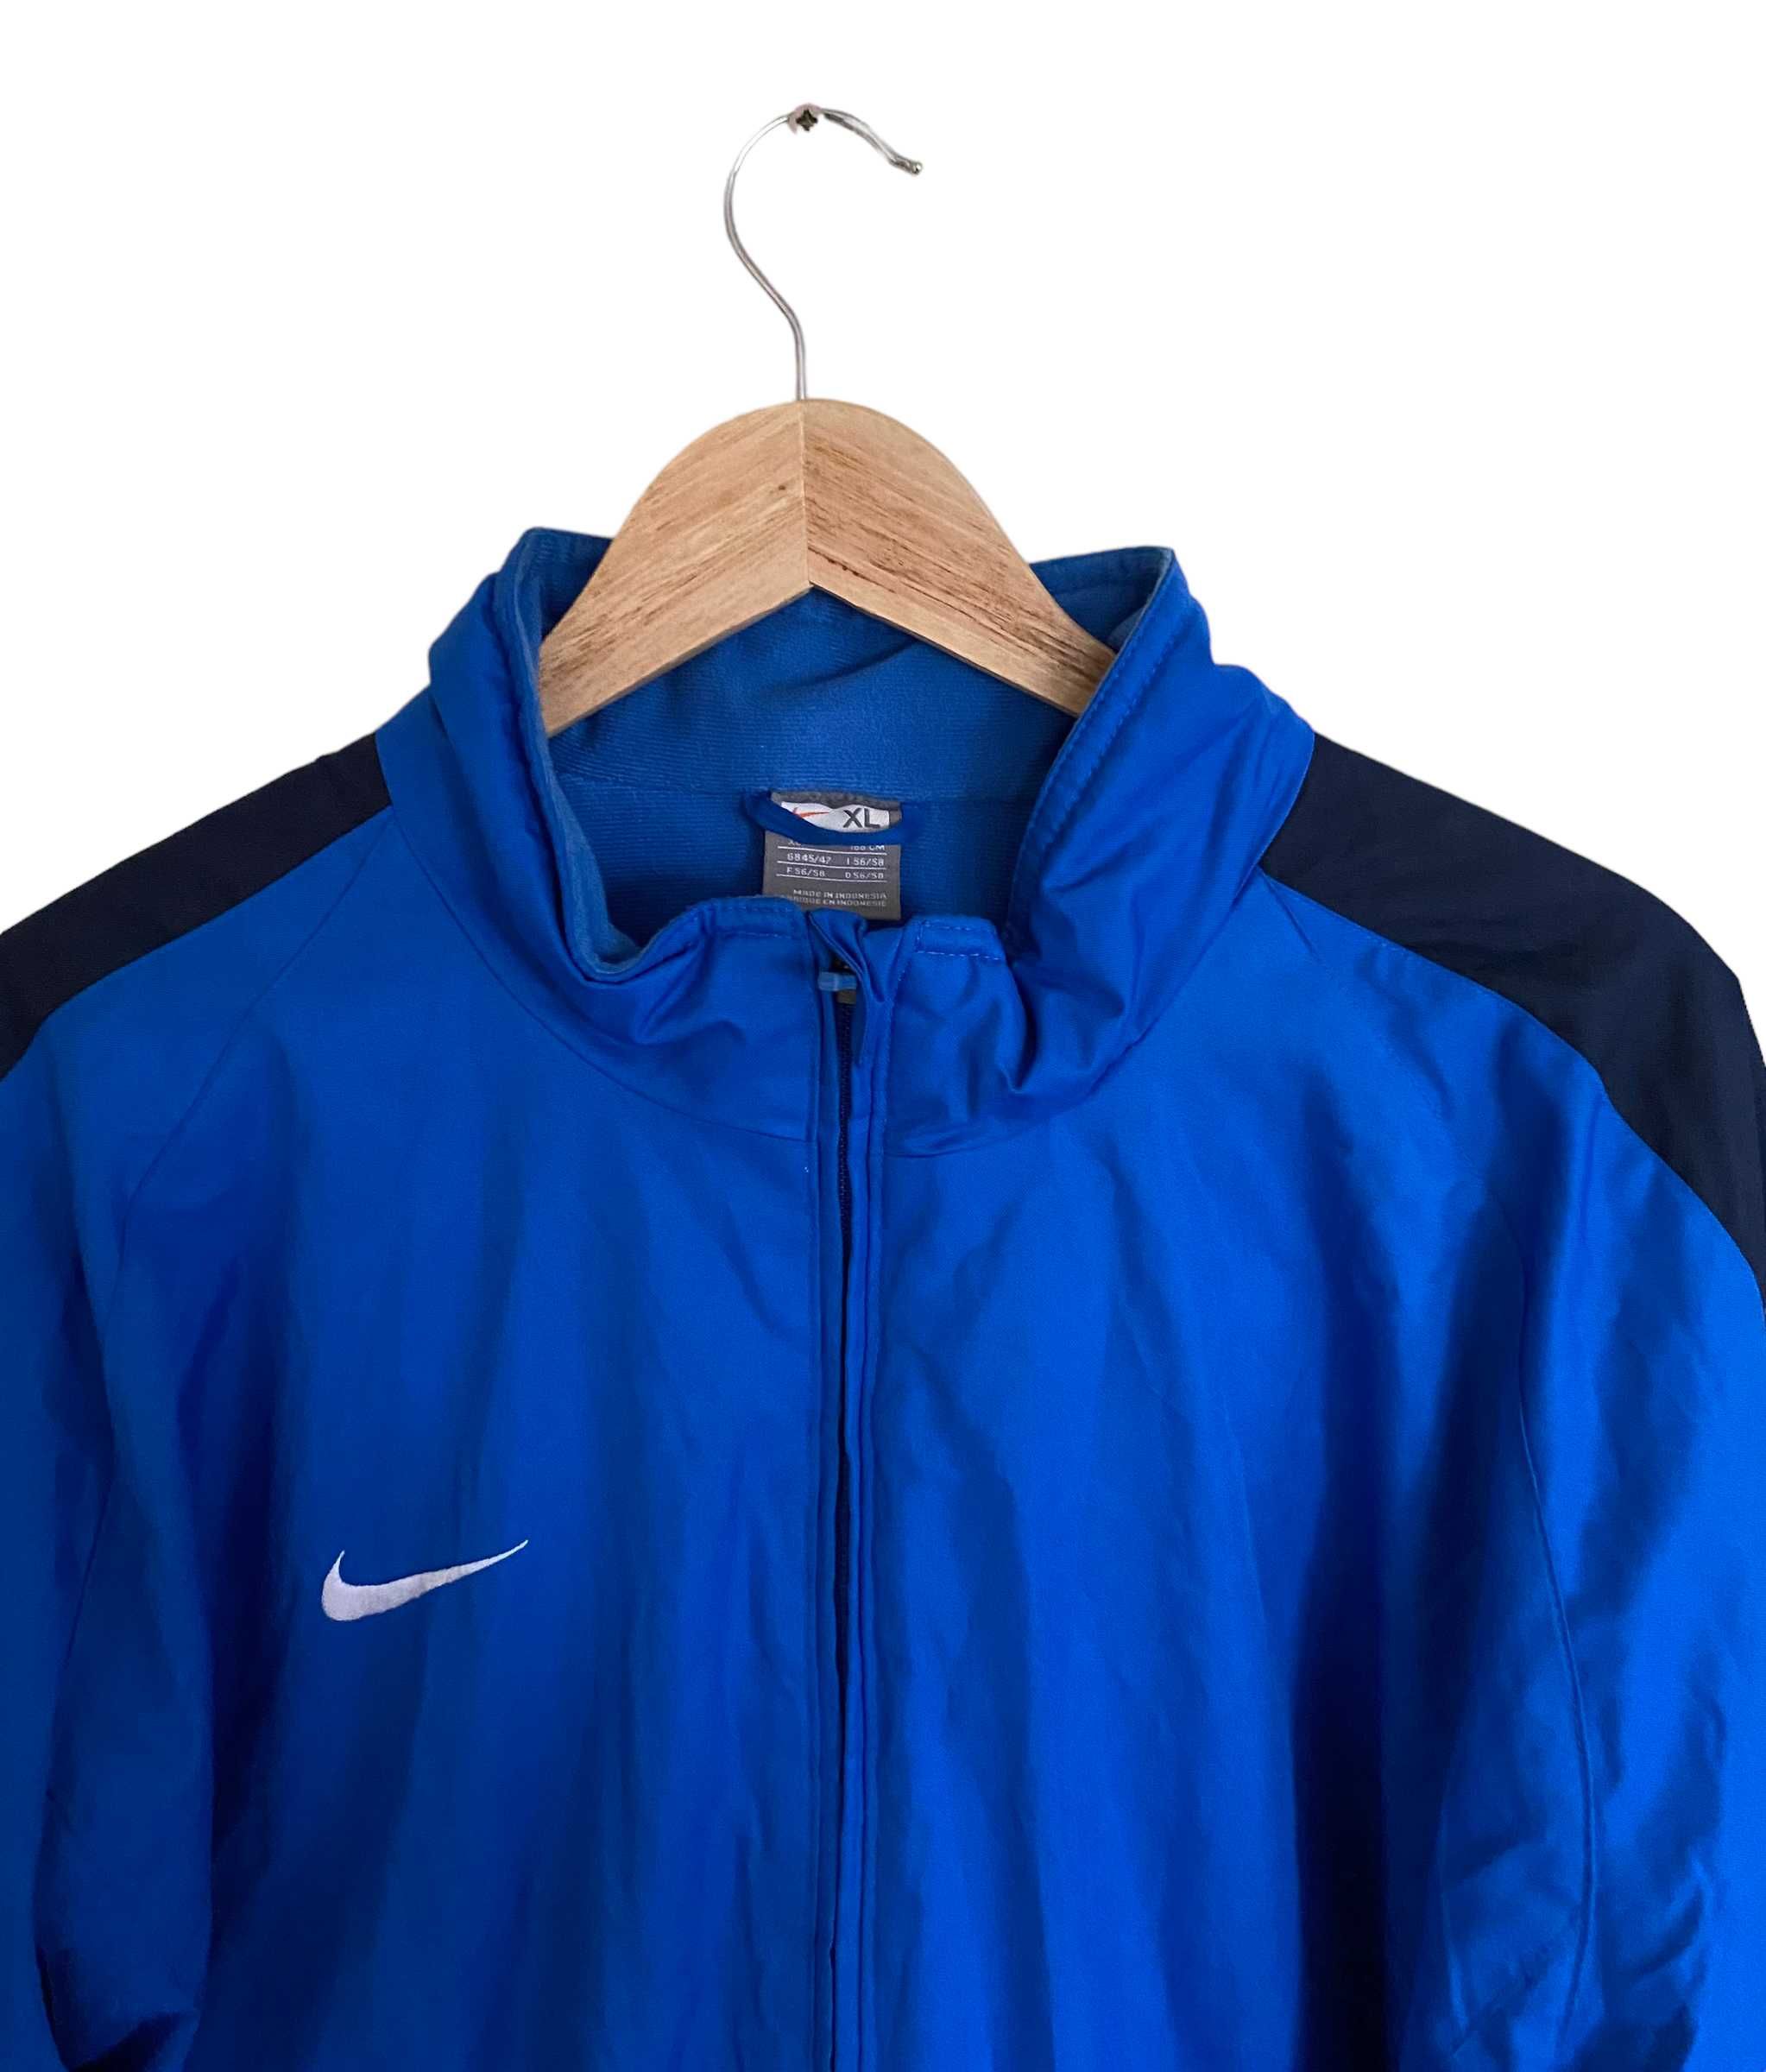 00s' Nike zimowa kurtka, coach jacket vintage, rozmiar XL